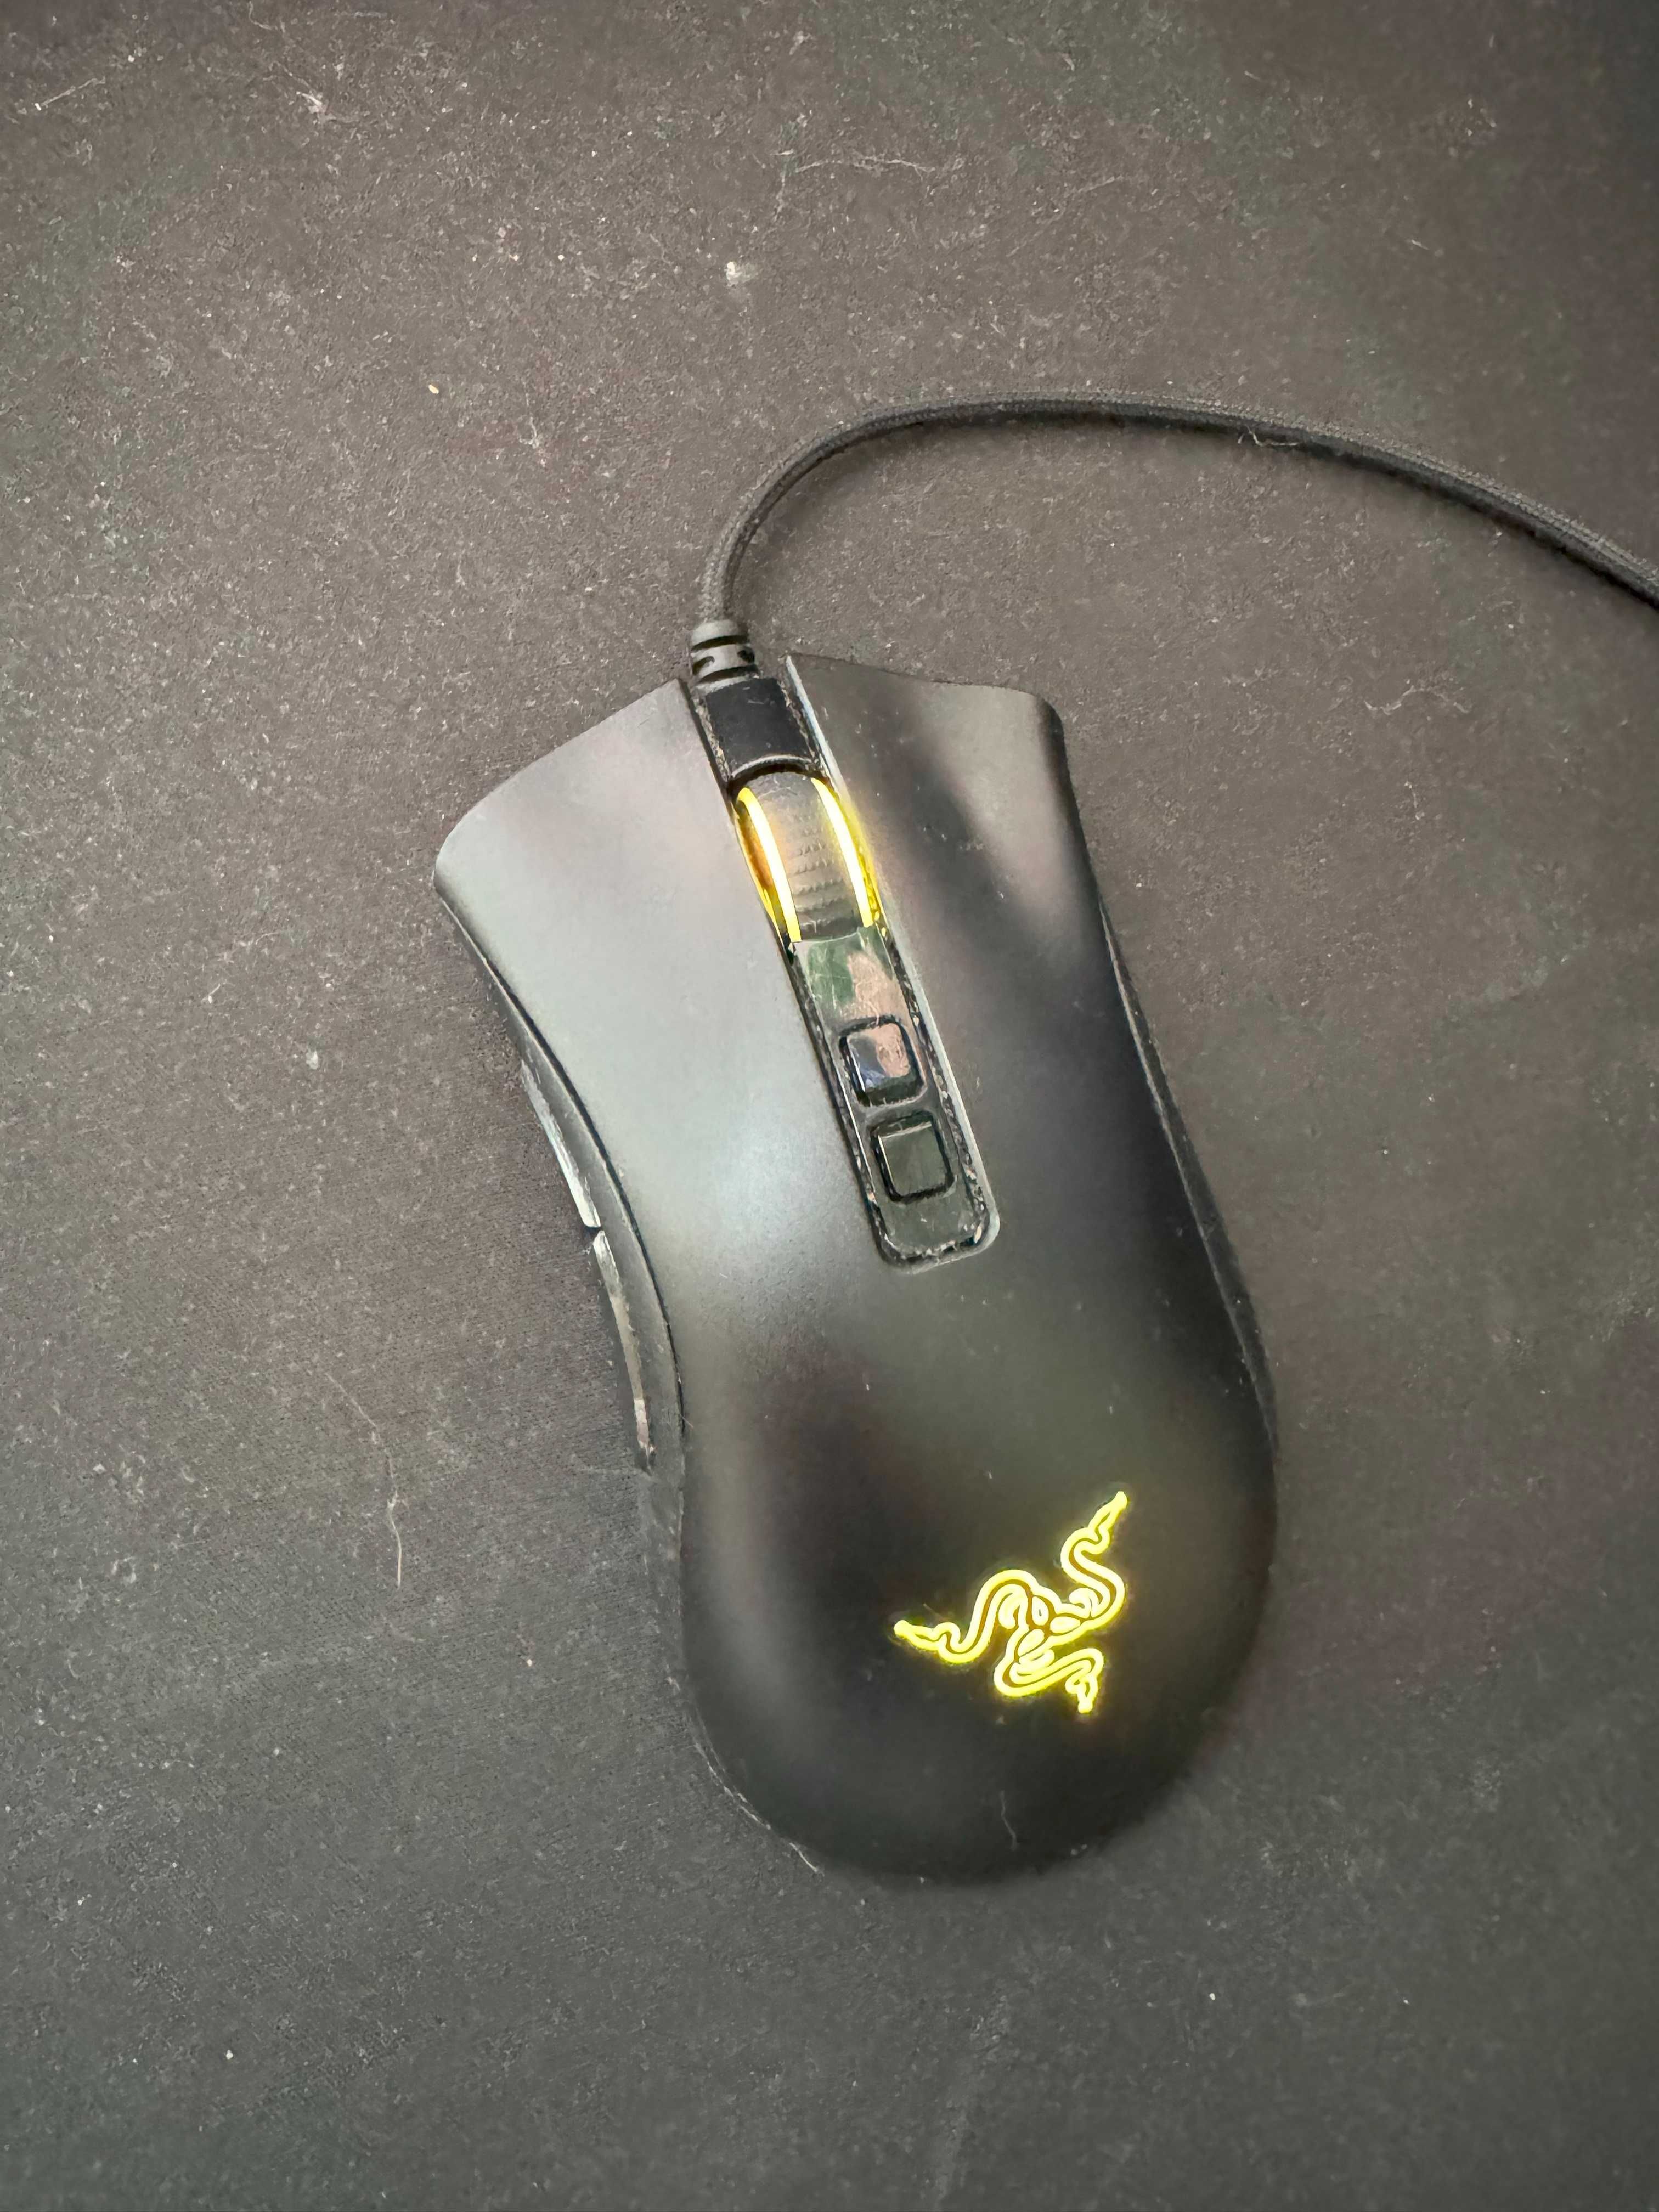 Razer Gaming клавиатура и мишка